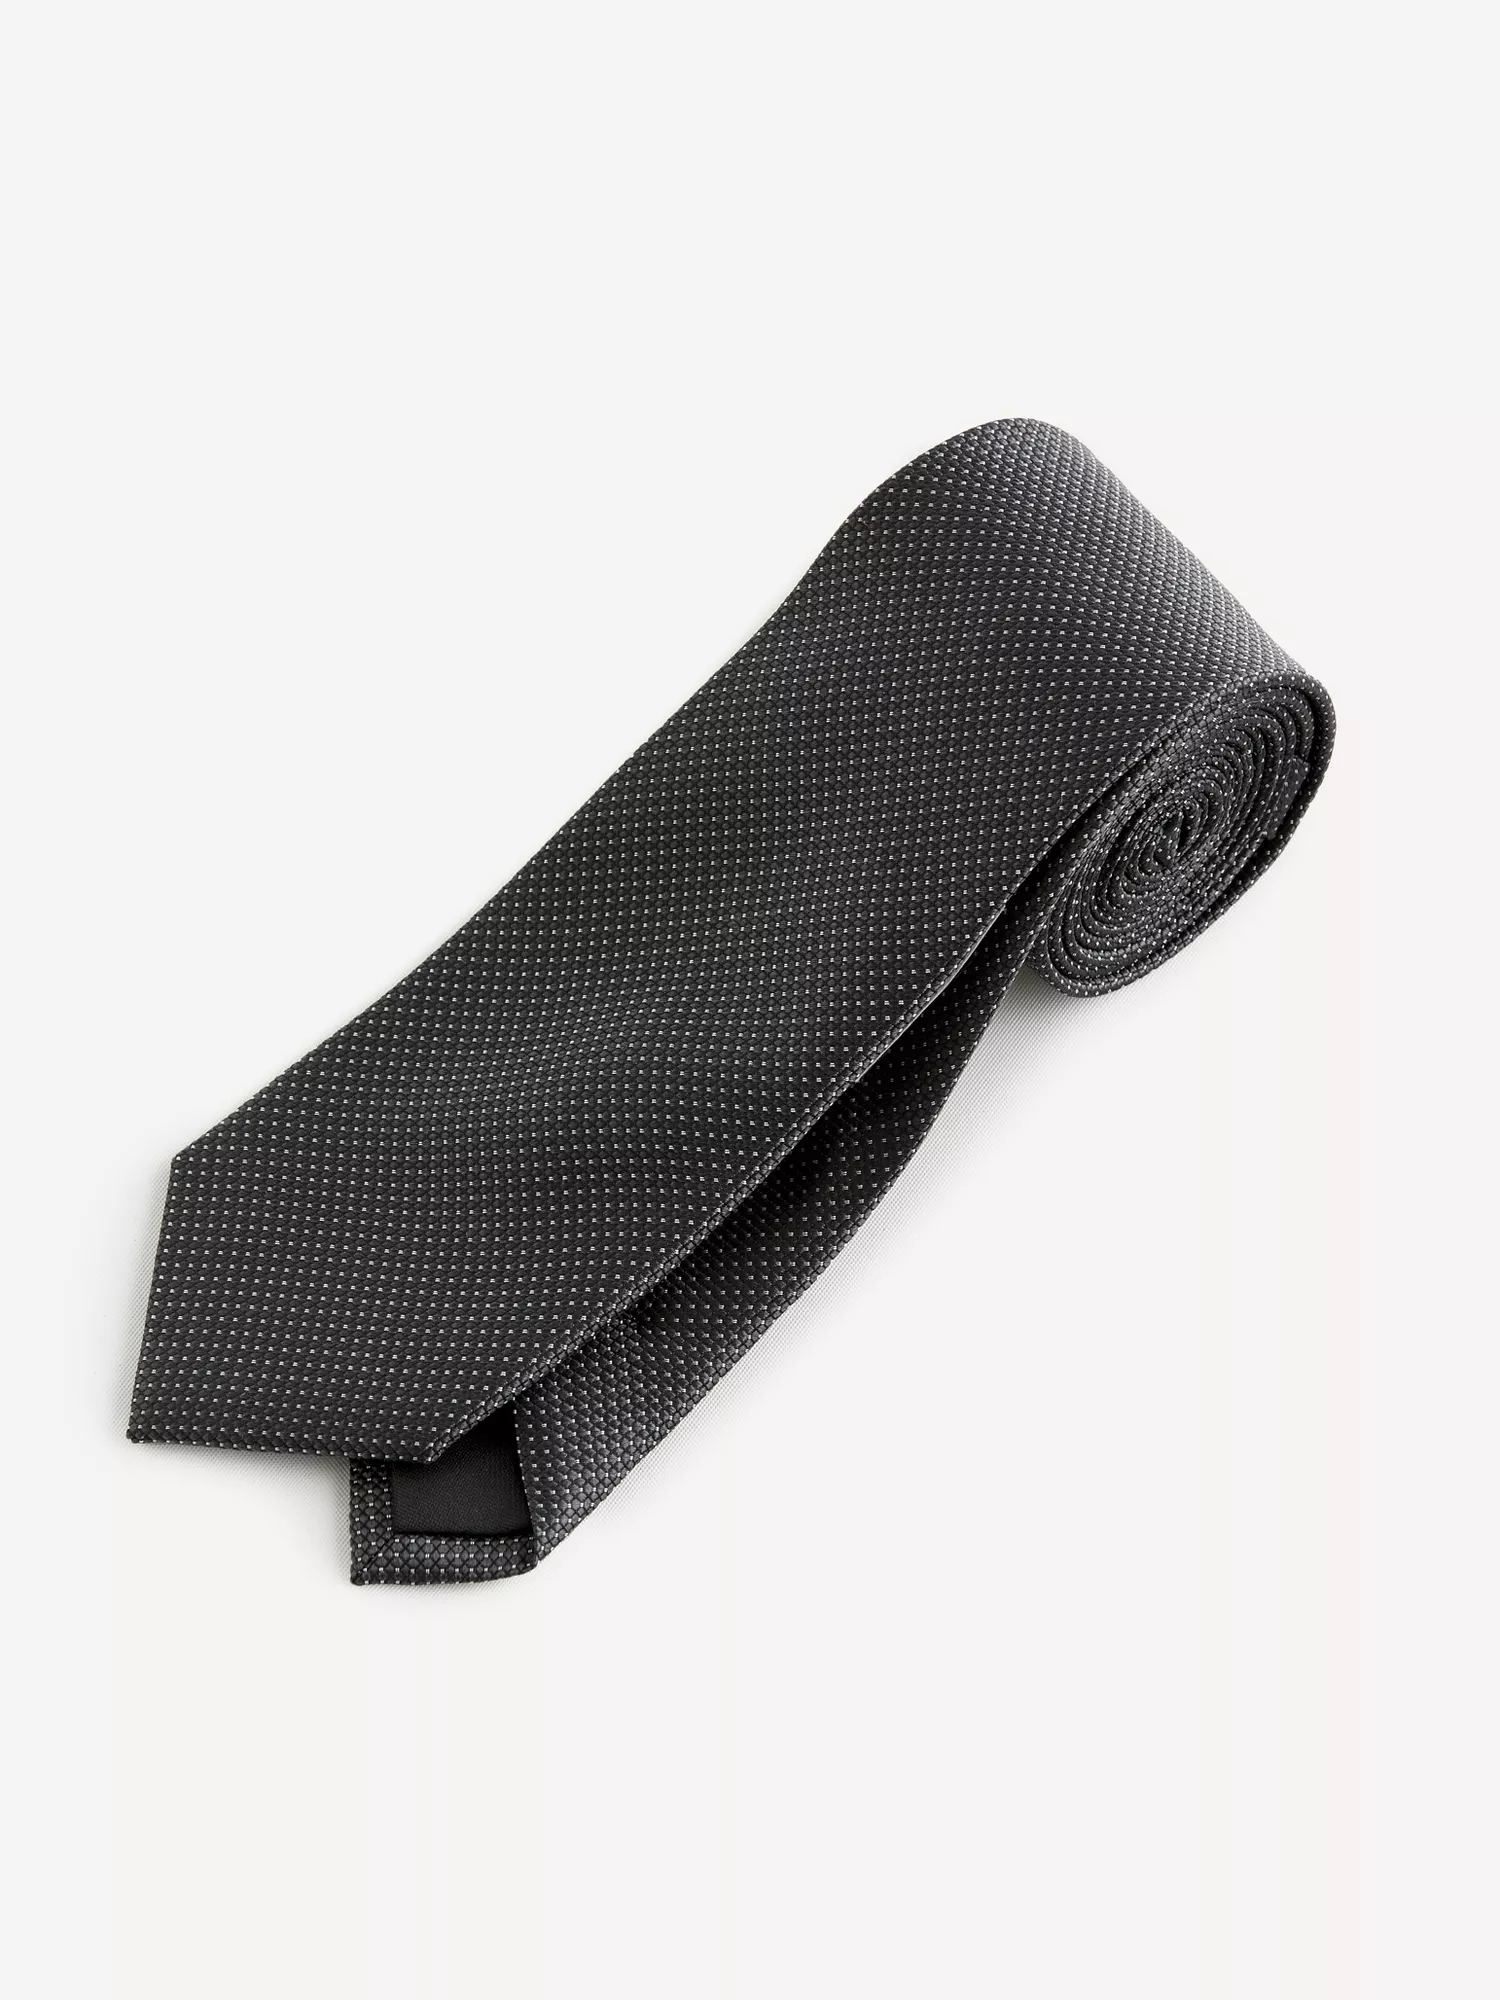 Hedvábná kravata Ristretto s puntíkem (1)